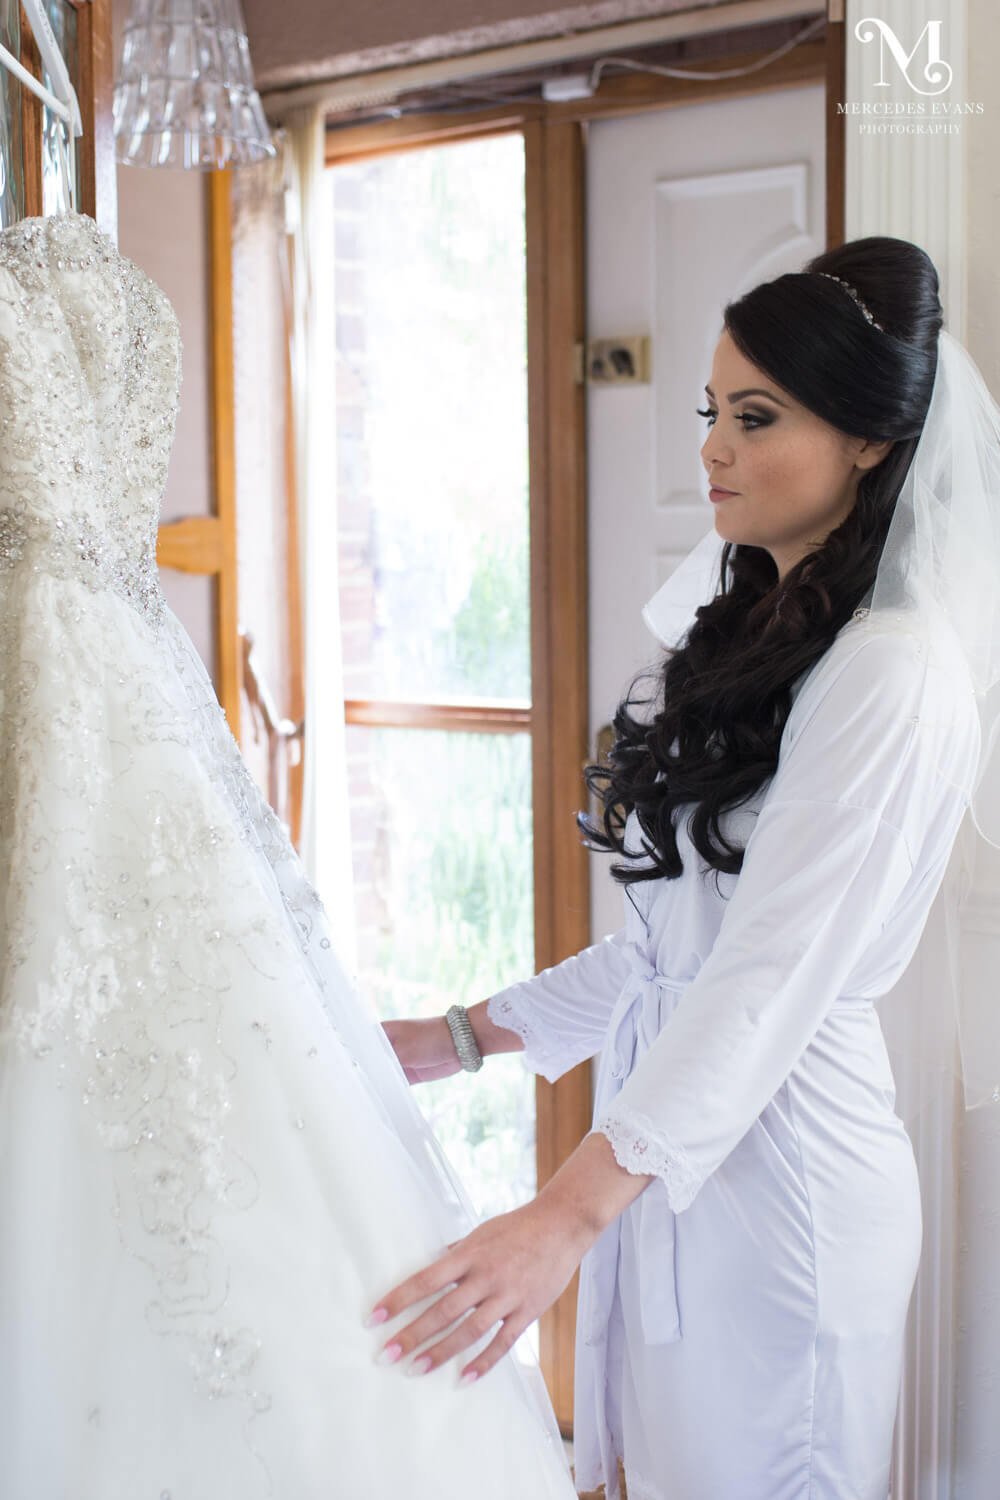 The bride admires her wedding dress as it hangs on the door